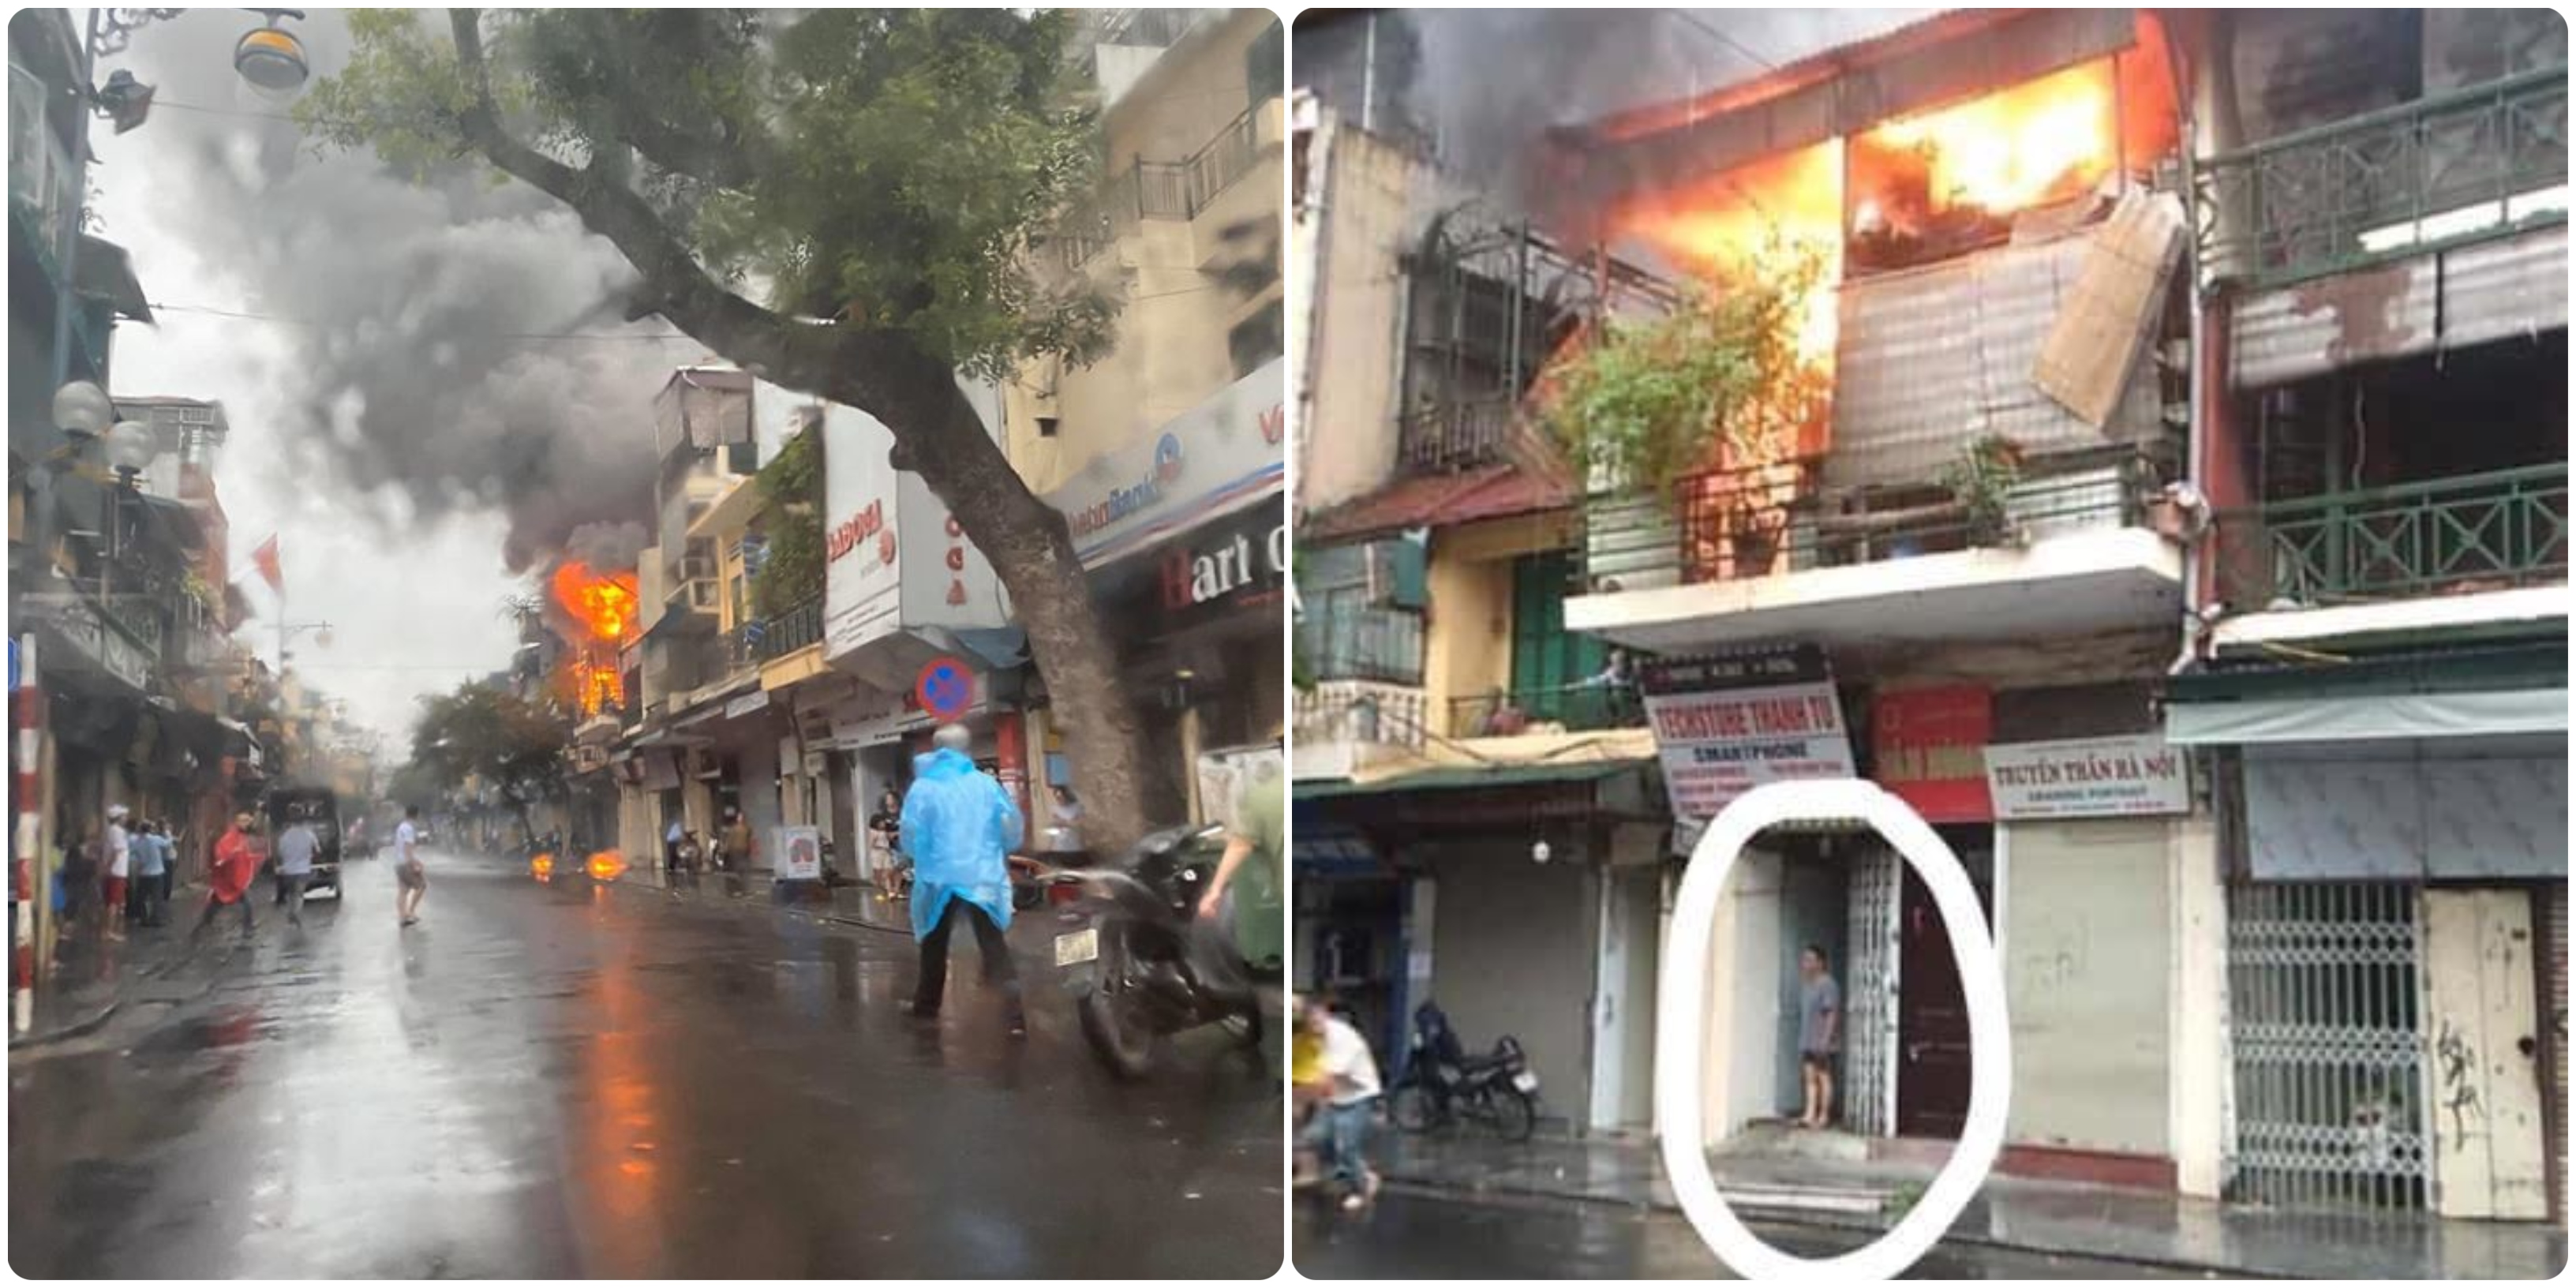 Cháy nhà trên phố Hàng Ngang - Hà Nội